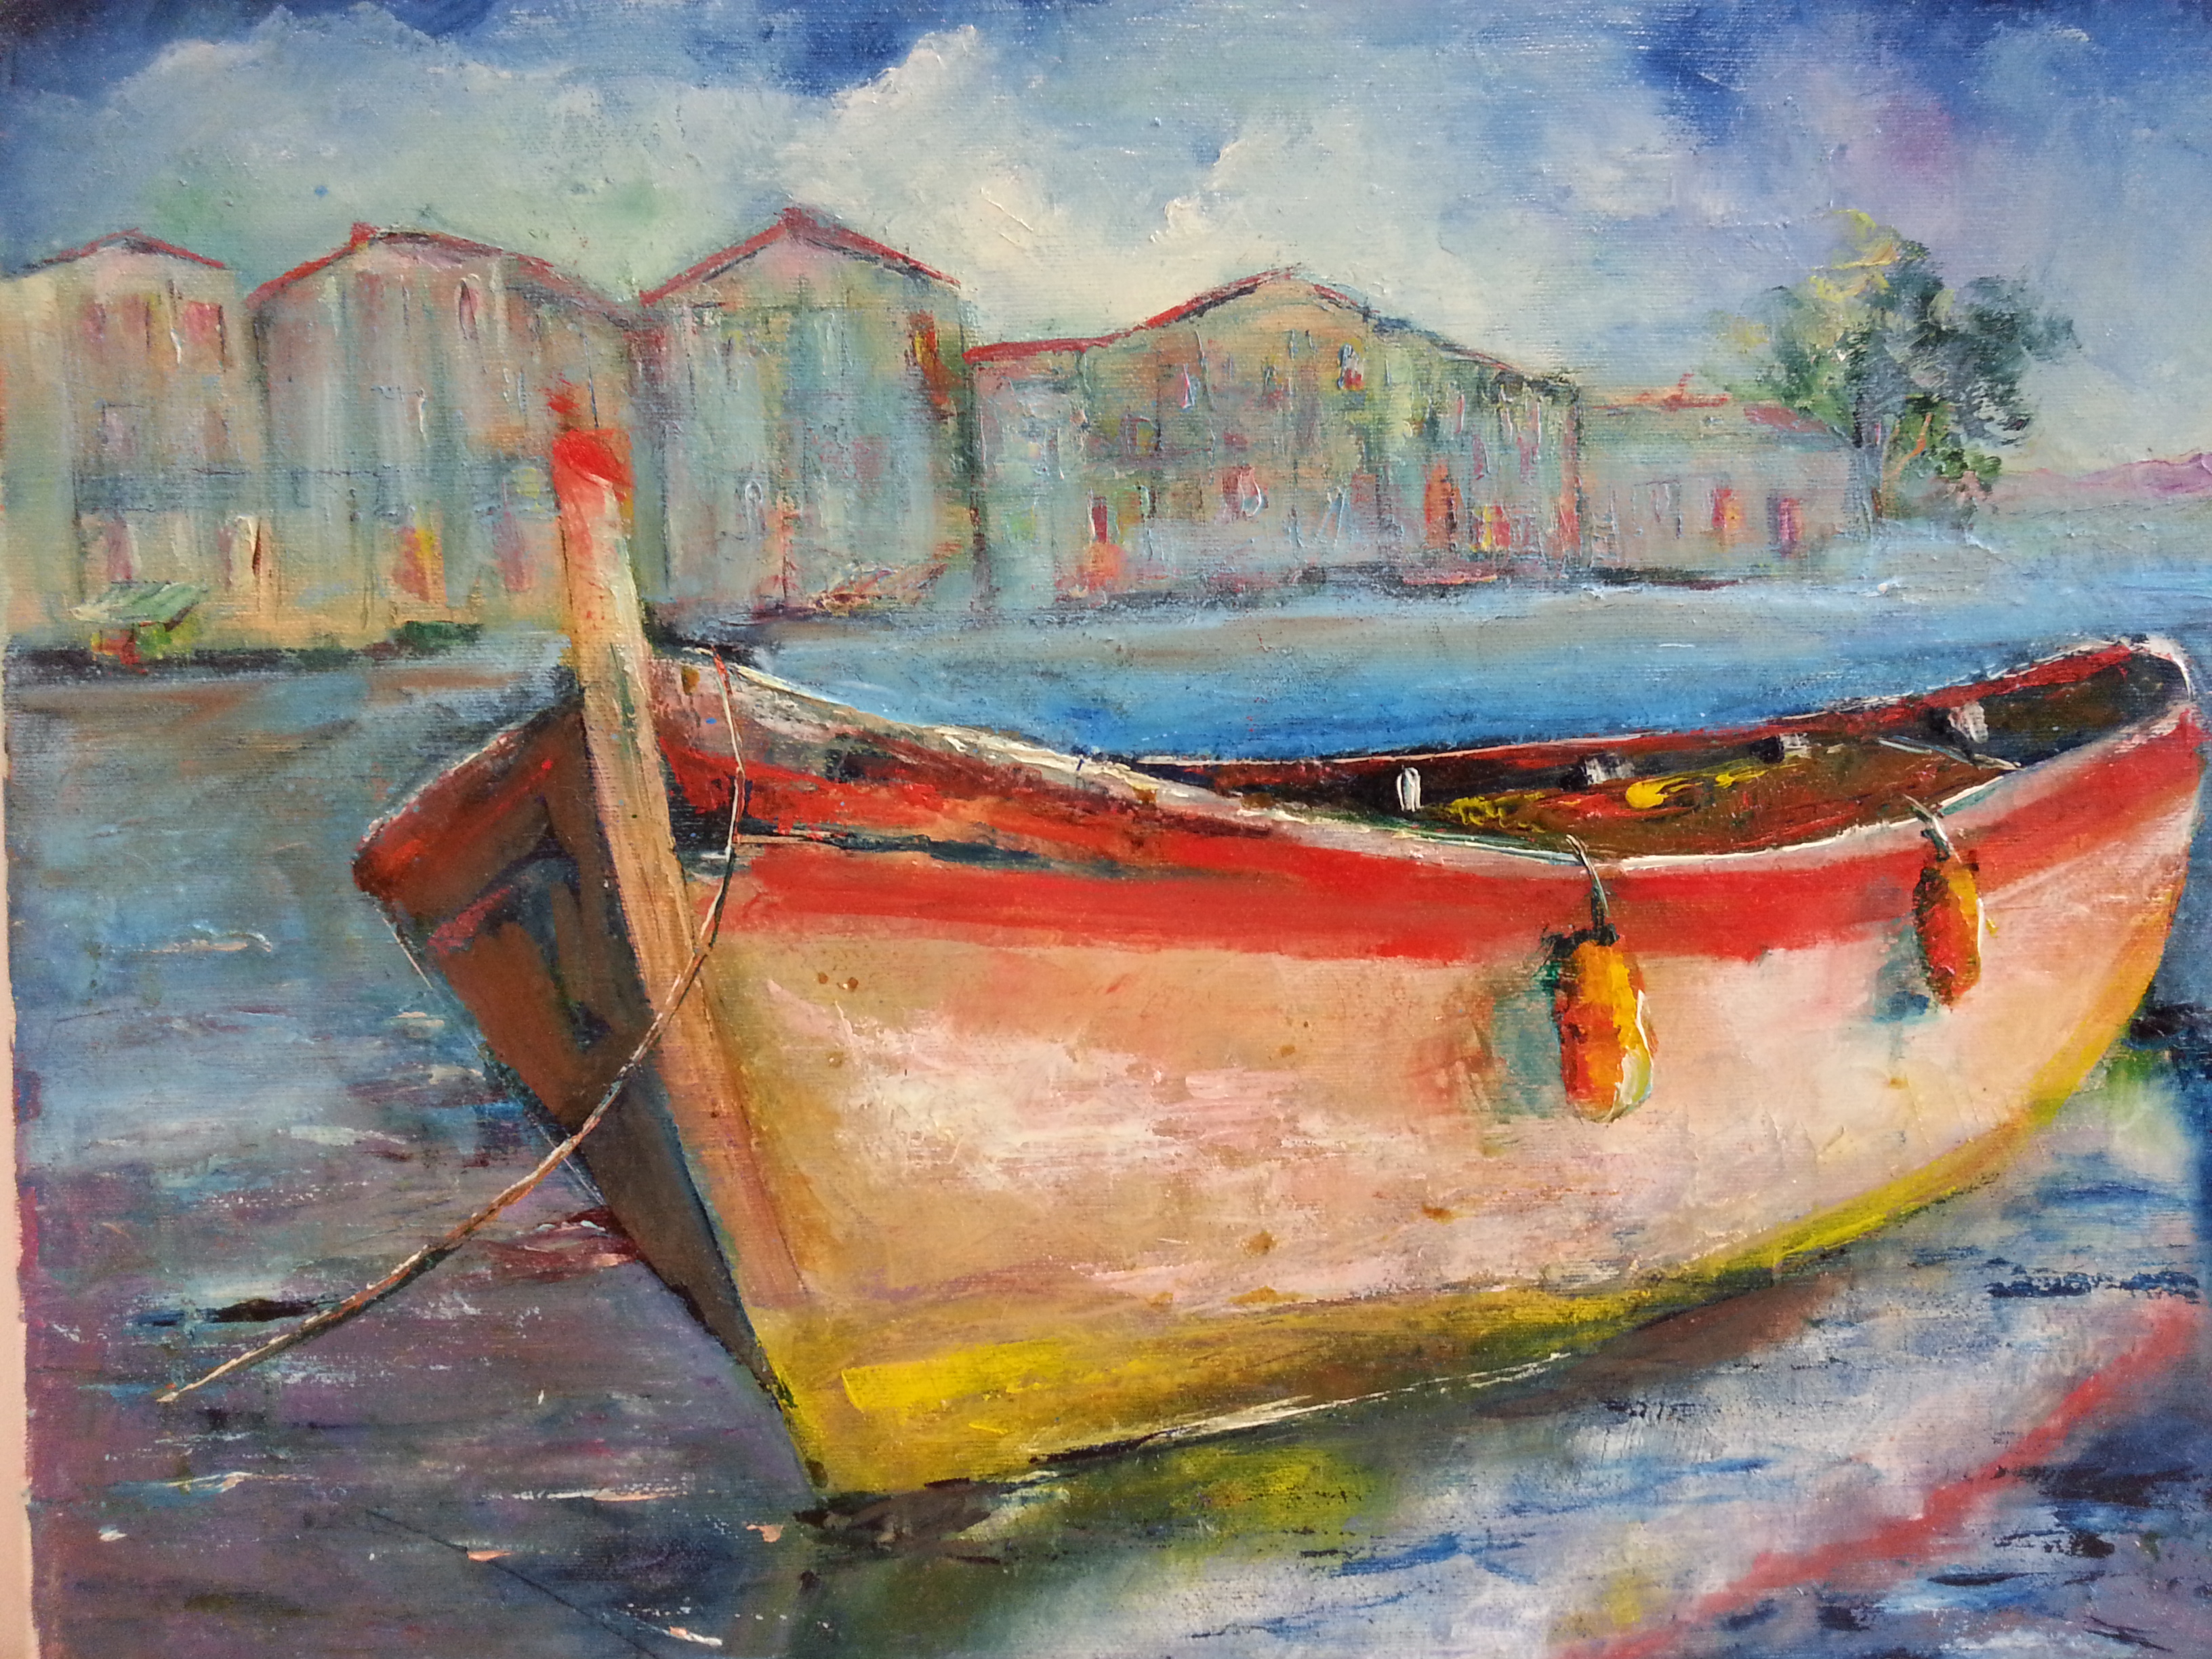 Peinture de l'artiste peintre Adèle liva, le titre de l'oeuvre est : calanque de marseille